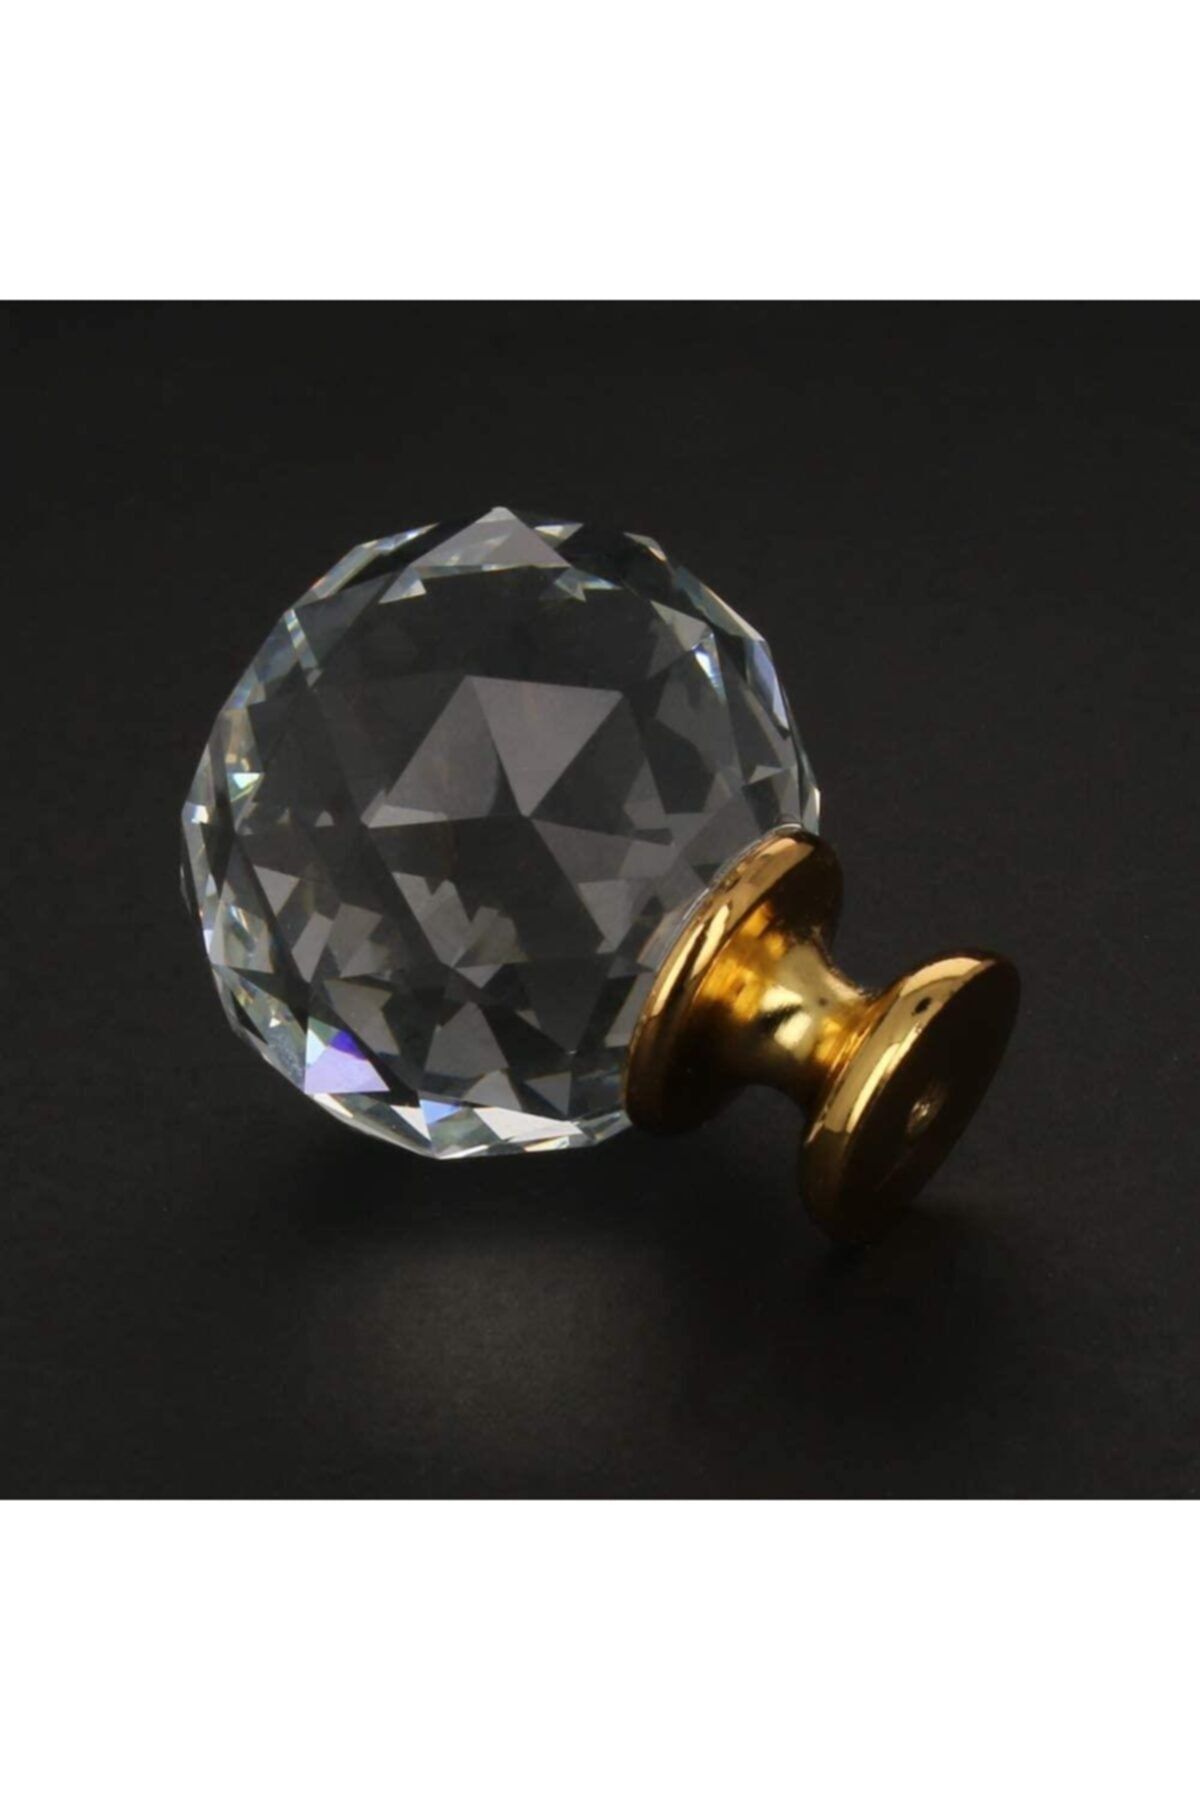 bablife Kristal Düğme Altın 30mm Çapında Çekmece Dolap Mobilya Kulpları